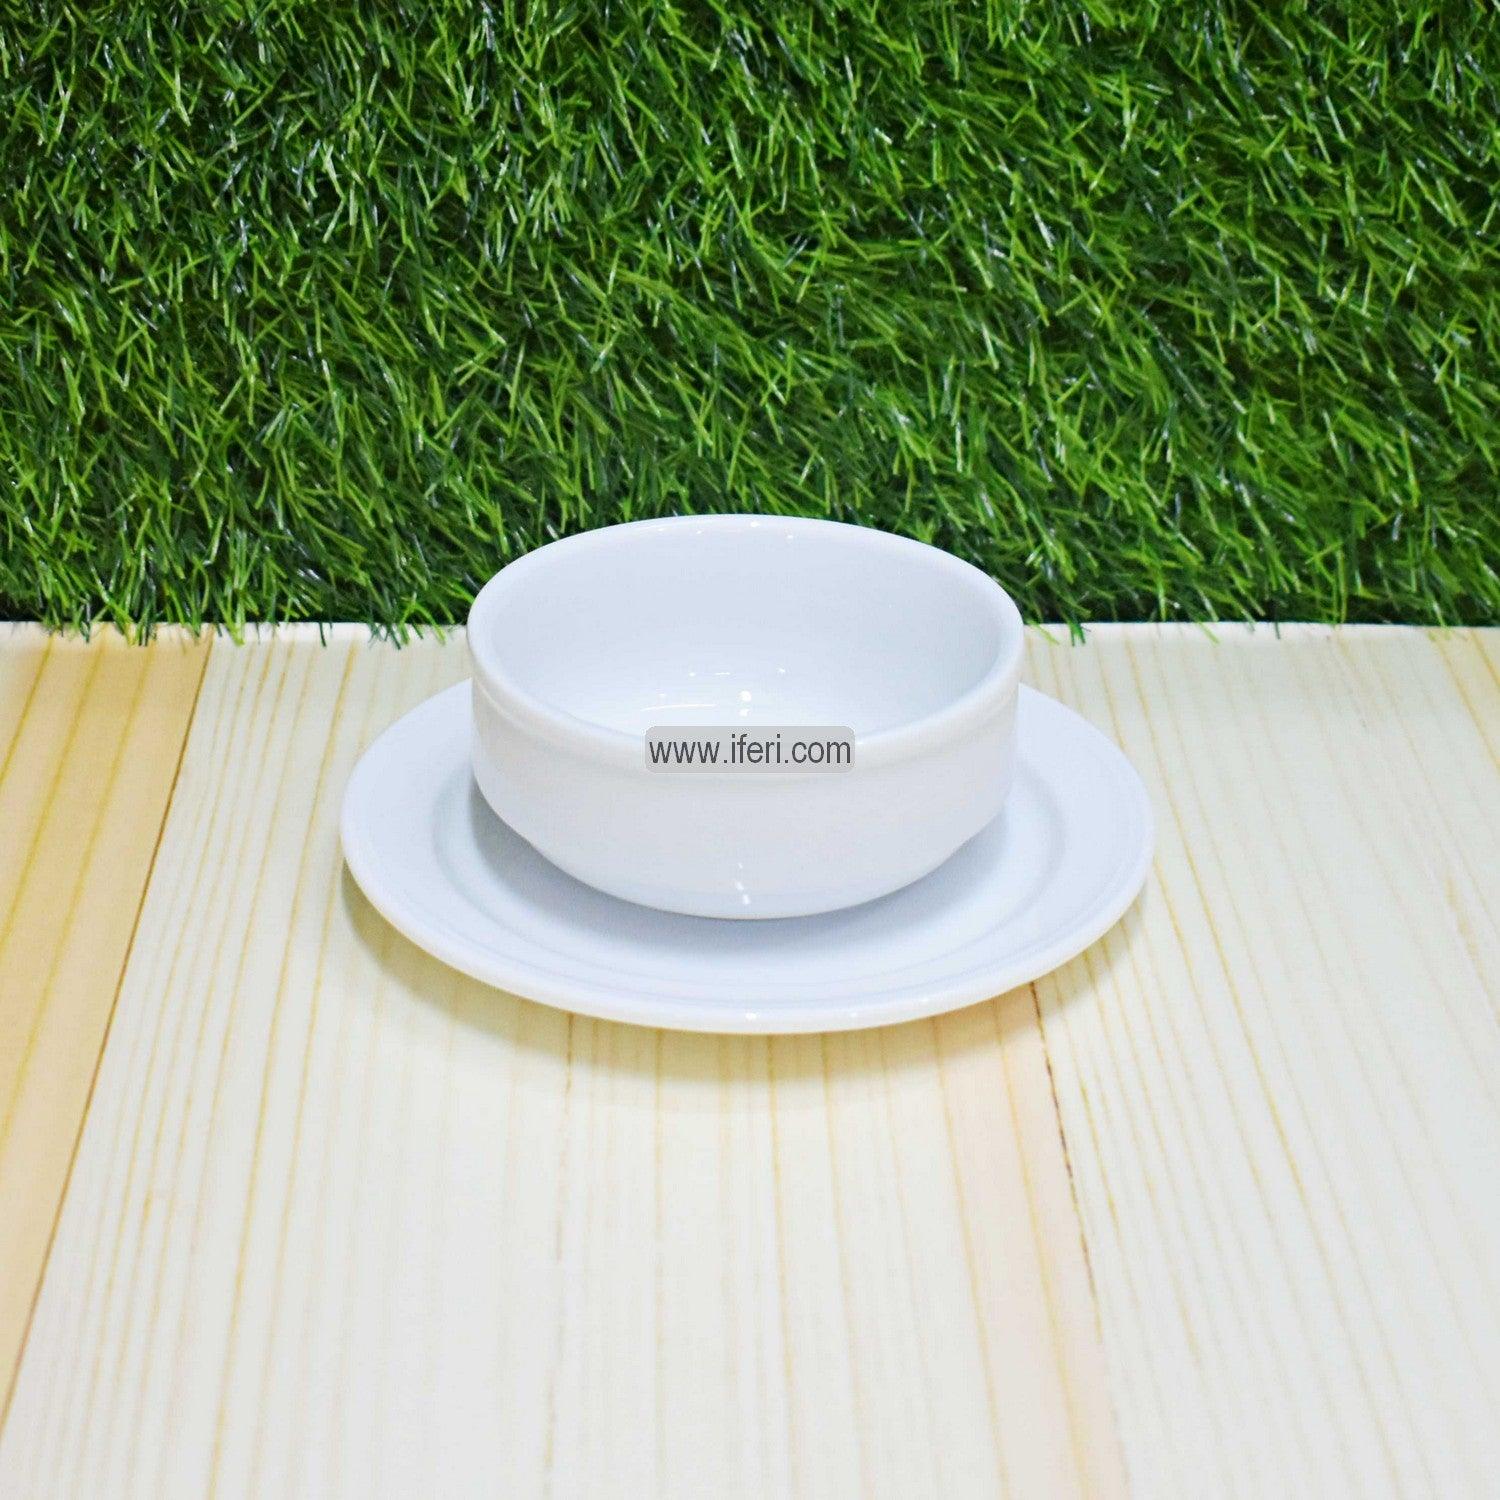 12 pcs White Ceramic Soup Set SN0666 Price in Bangladesh - iferi.com